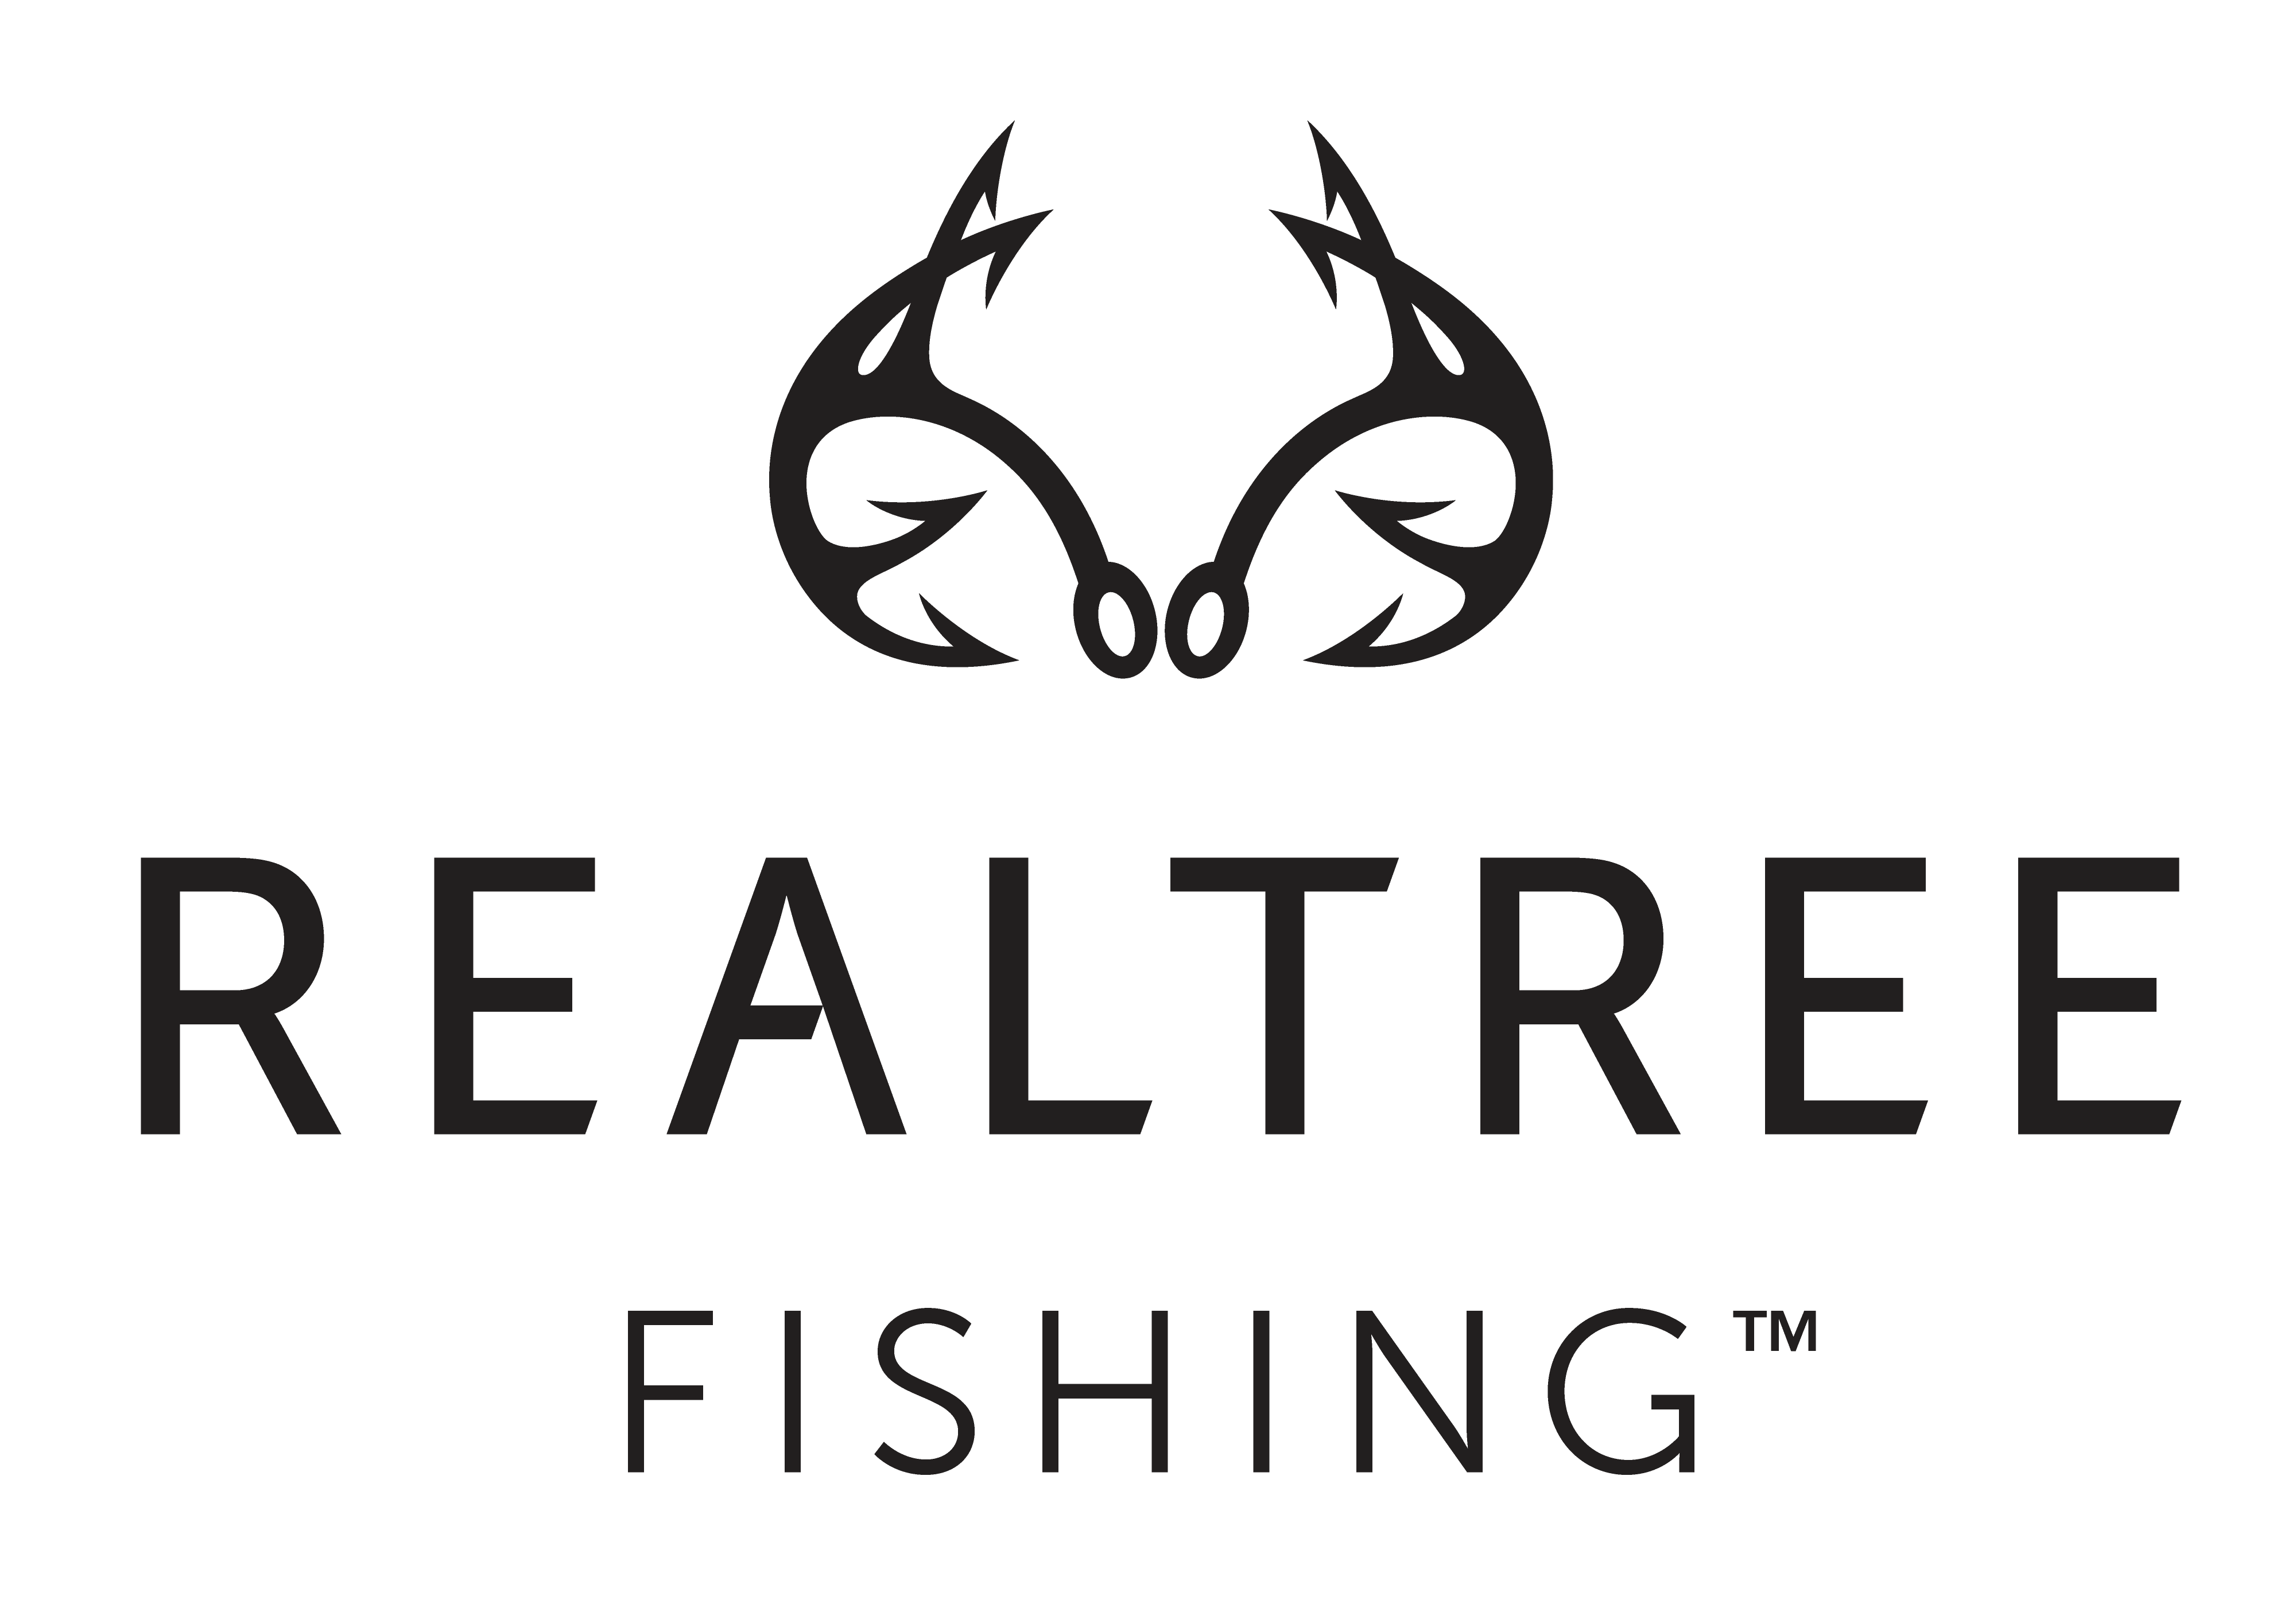 Realtree Fishing